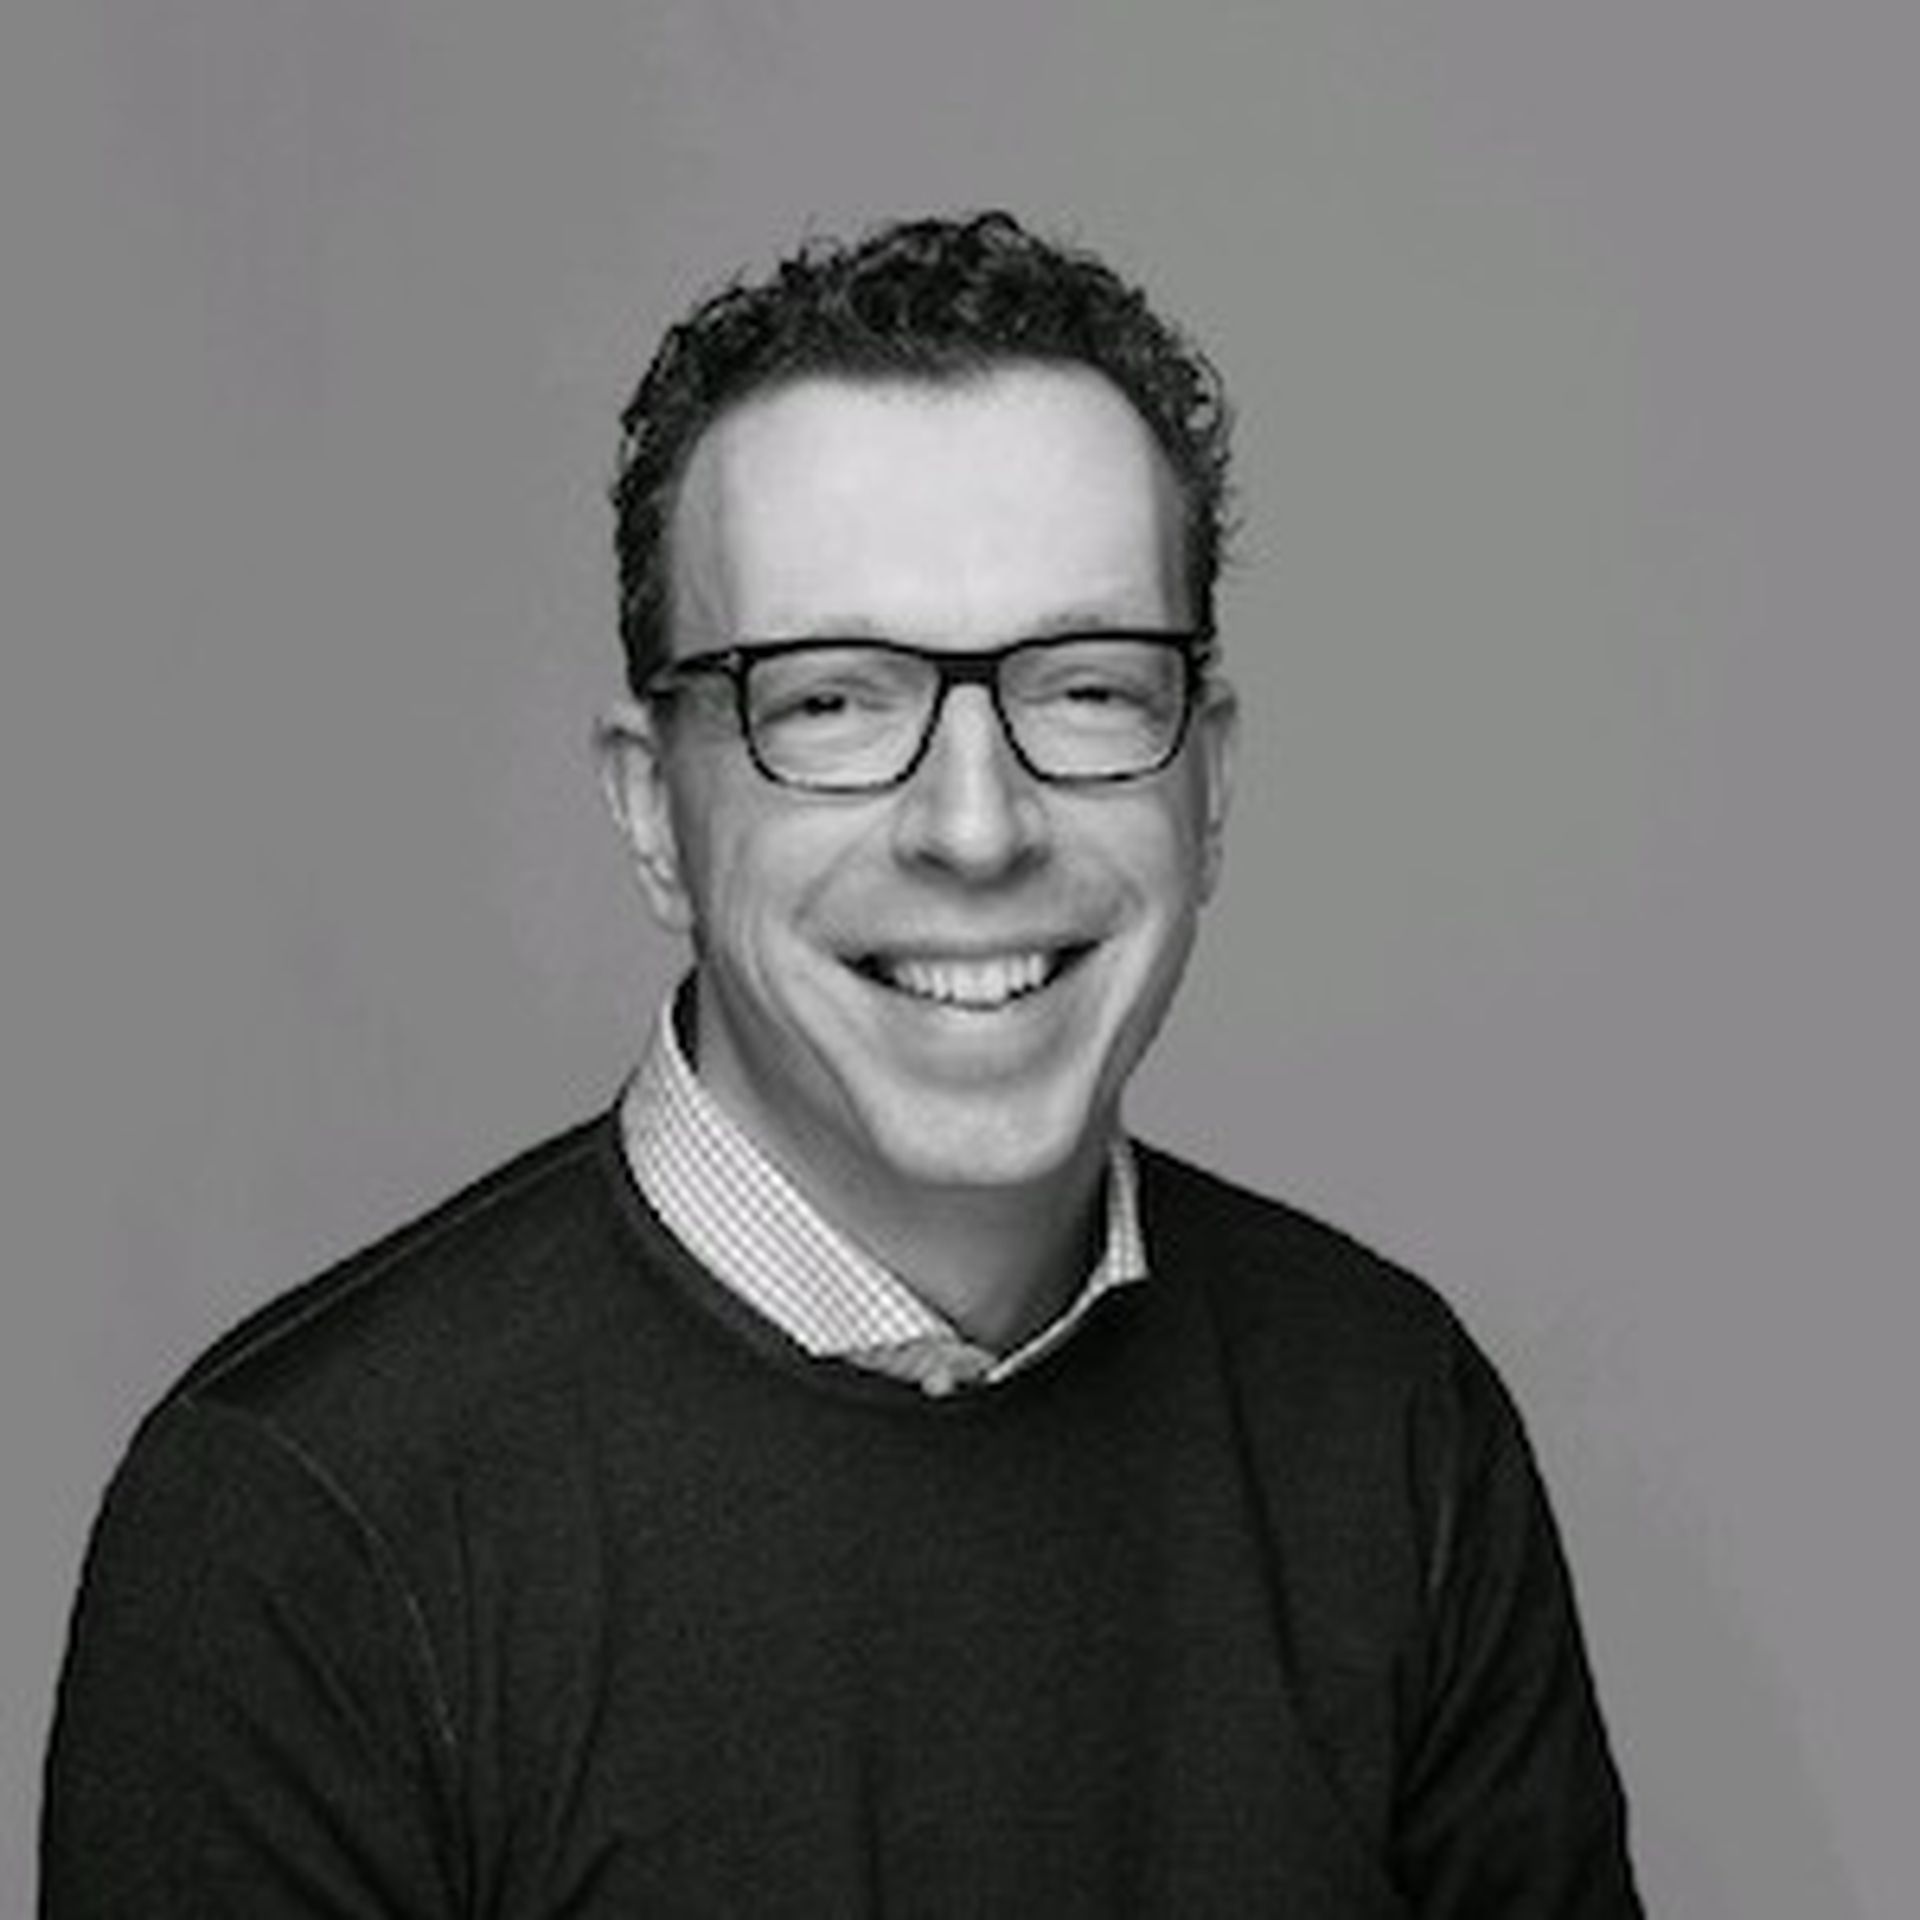 Storm Digital CEO Viktor van der Wijk